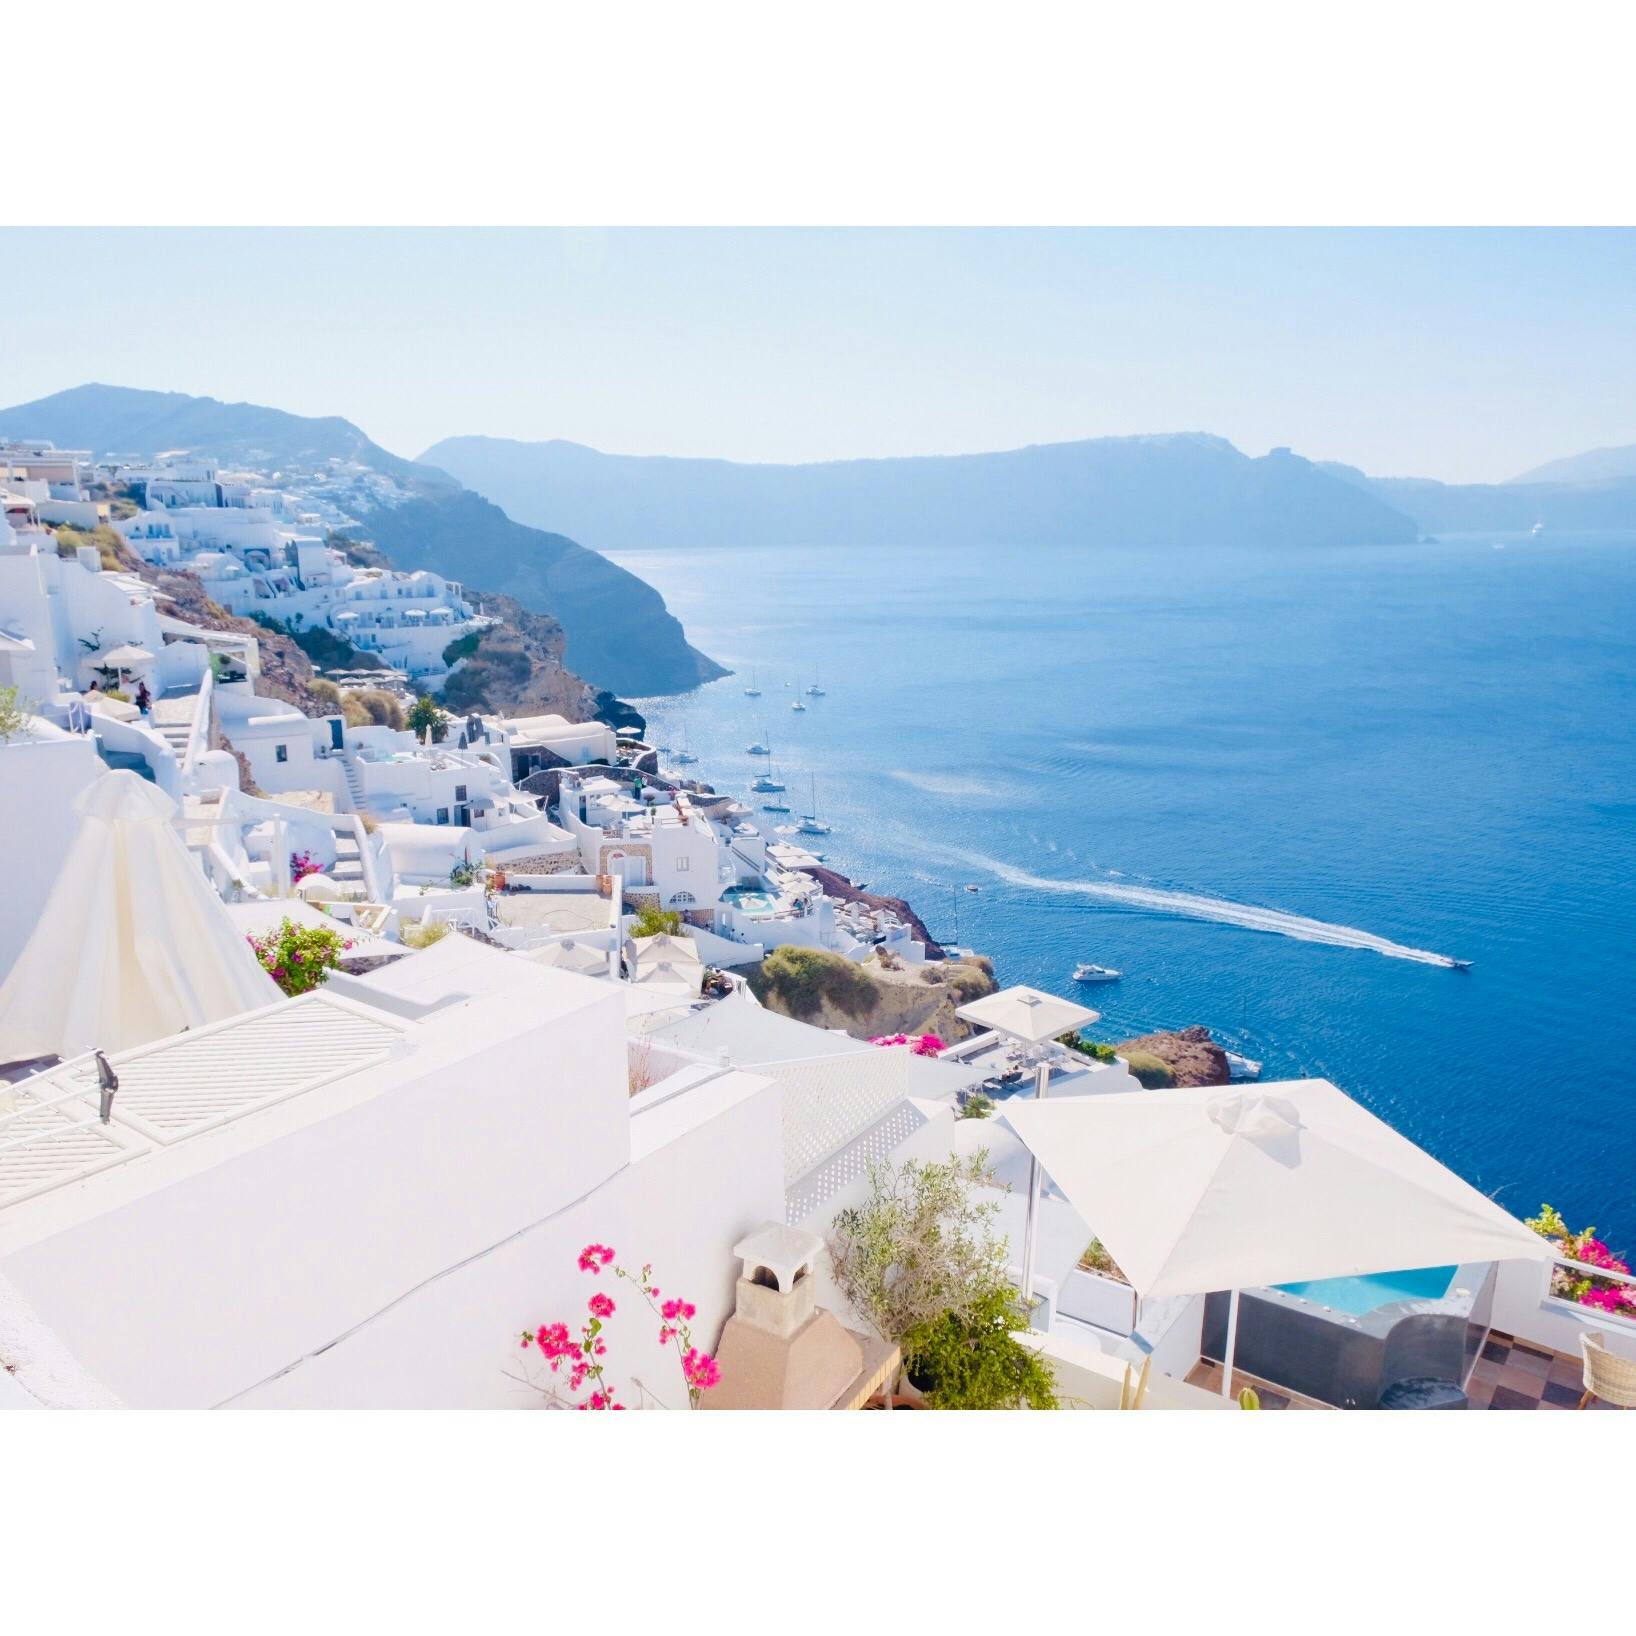 サントリーニ島の投稿写真 感想 みどころ ギリシャ サントリーニ島青い空 青い海 白い建物 トリップノート